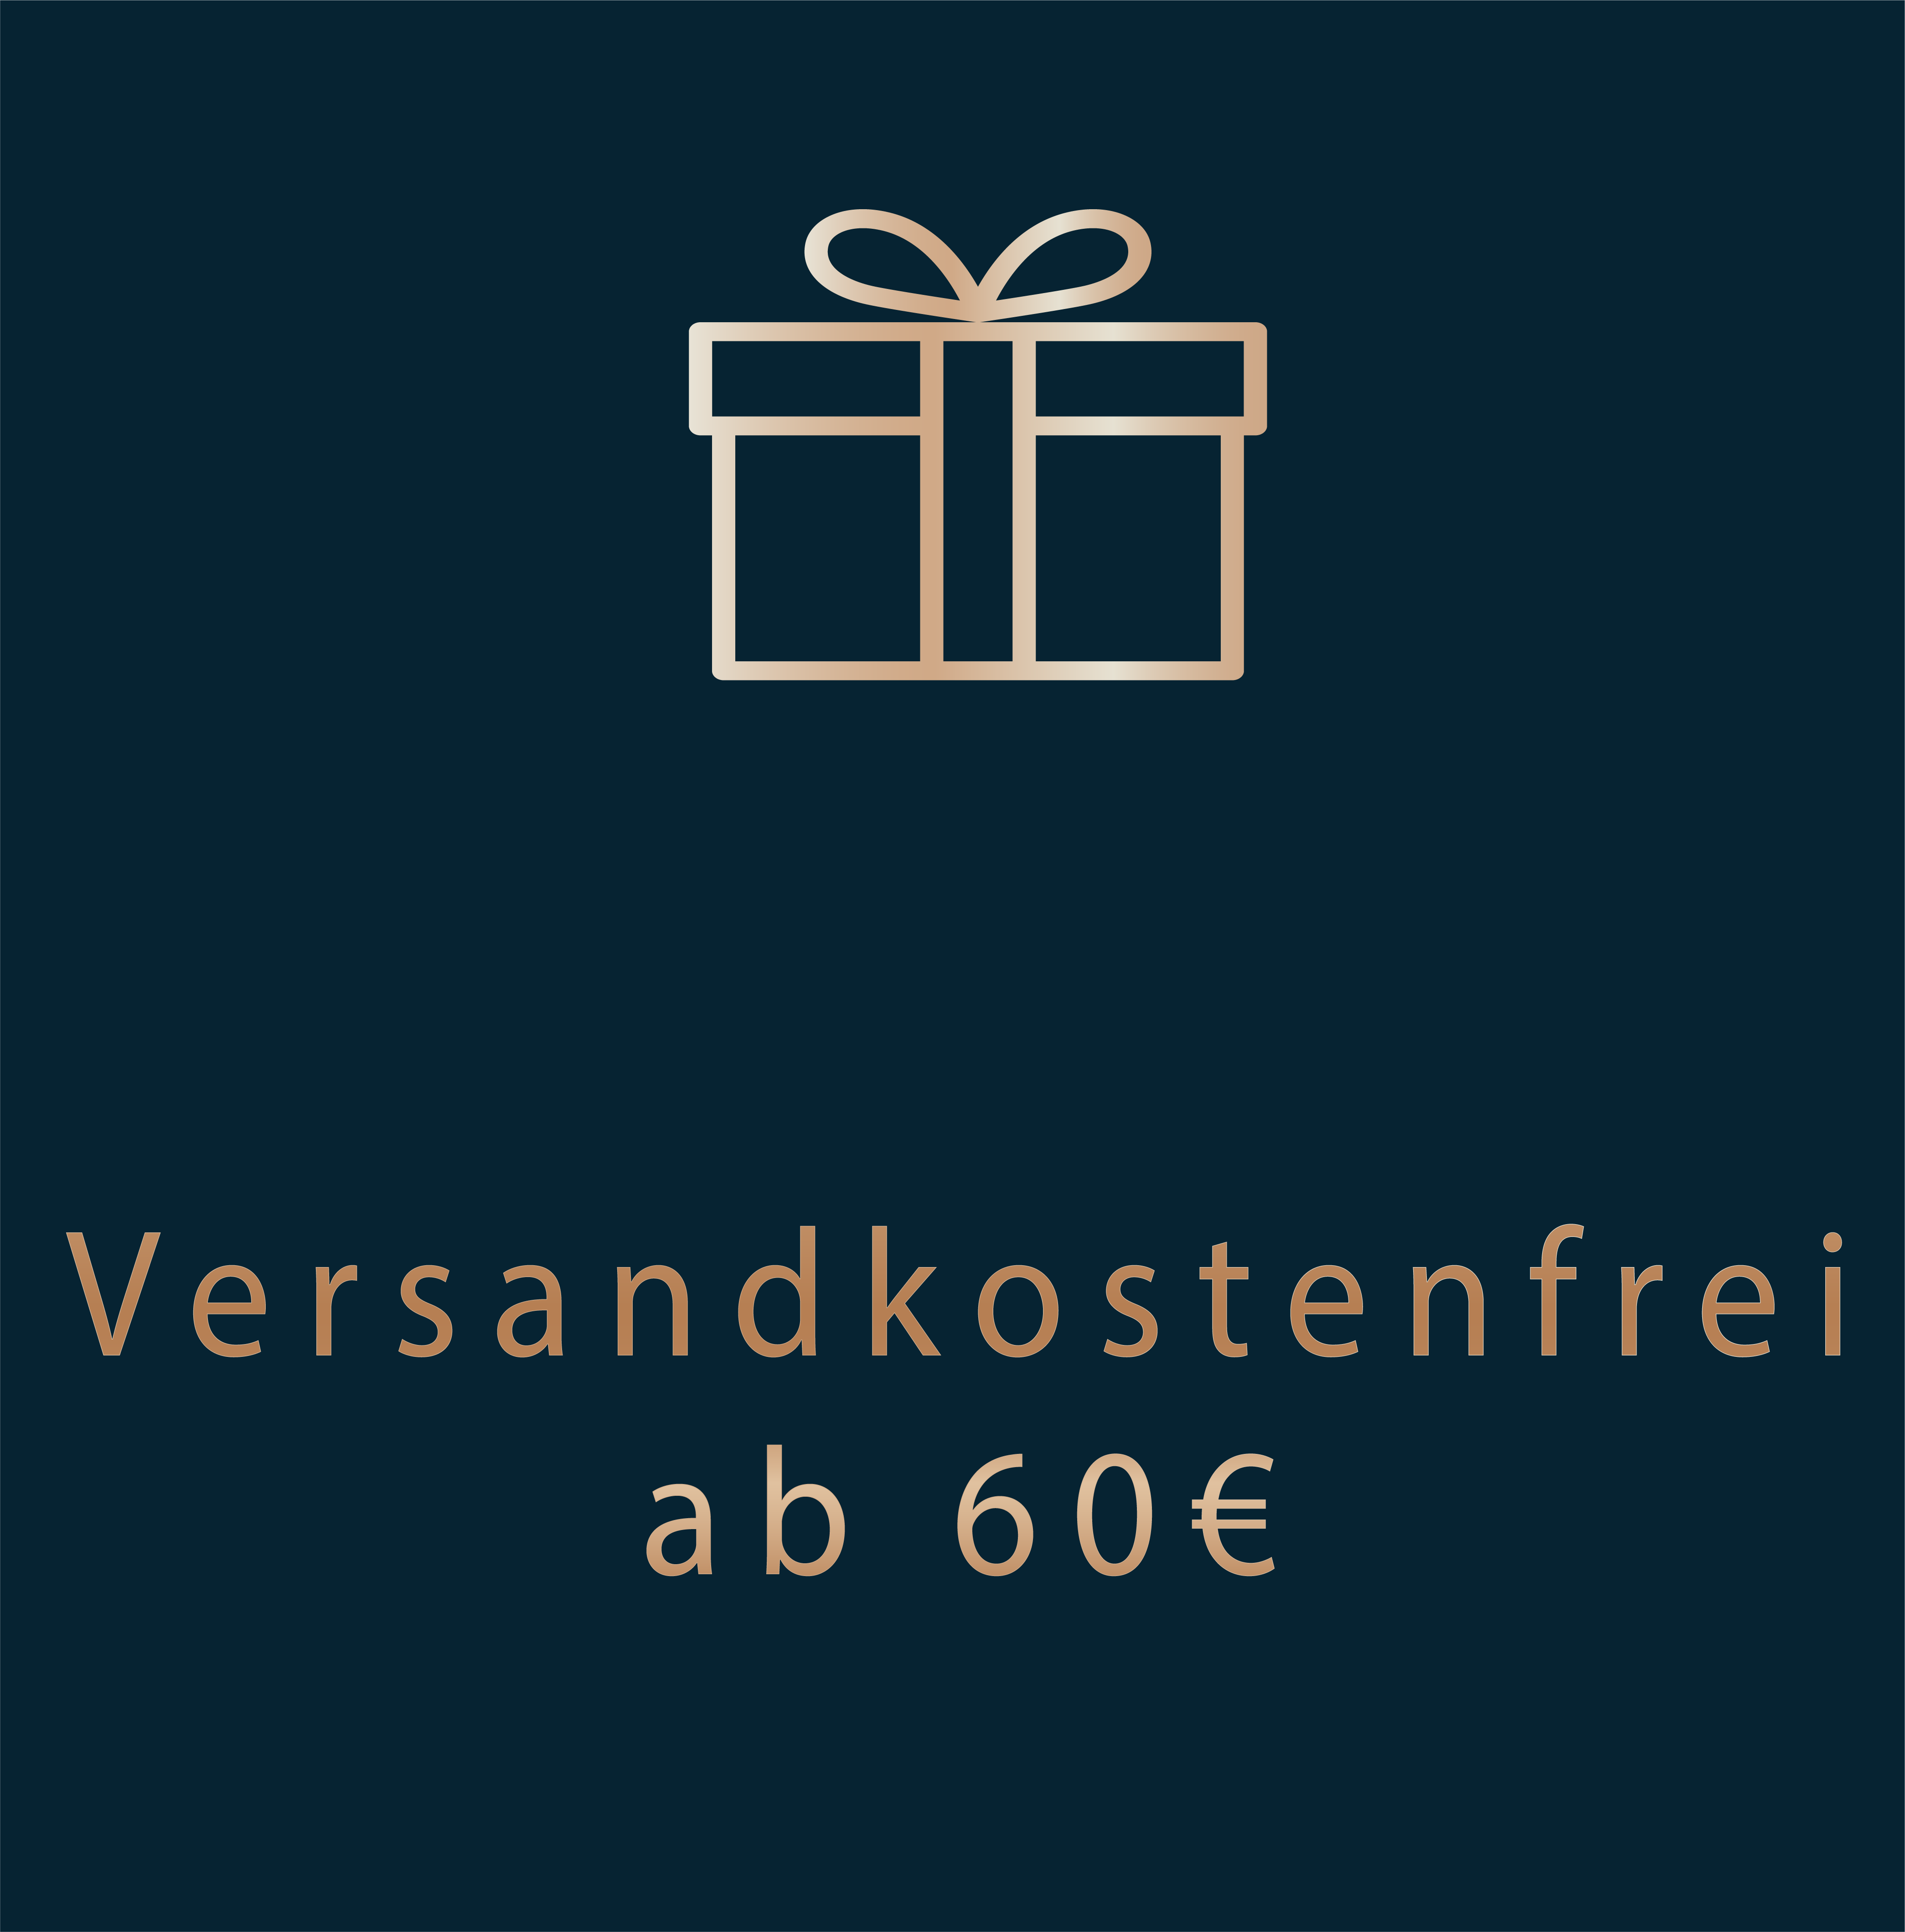 Goldene Schrift: „Versandkostenfrei ab 60€" auf dunkelblauen Hintergrund